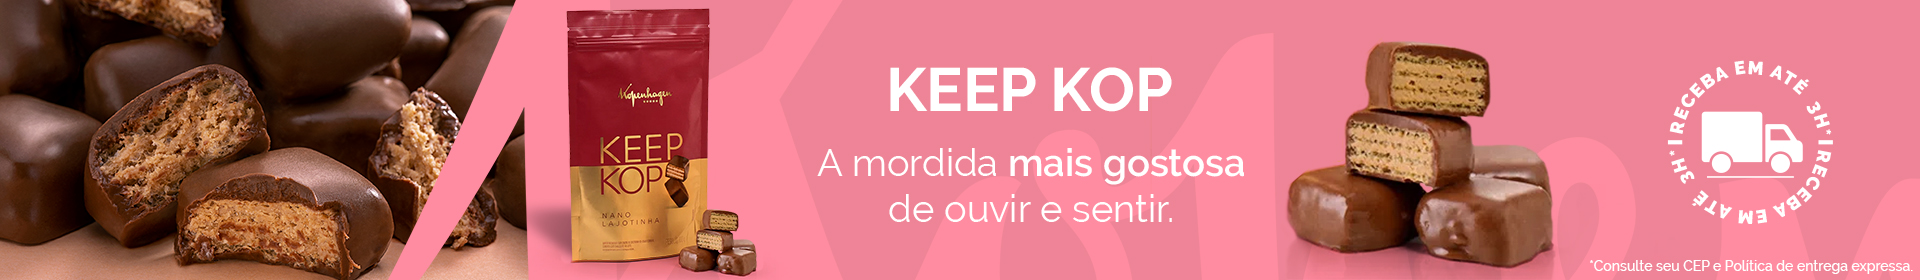 Keep Kop